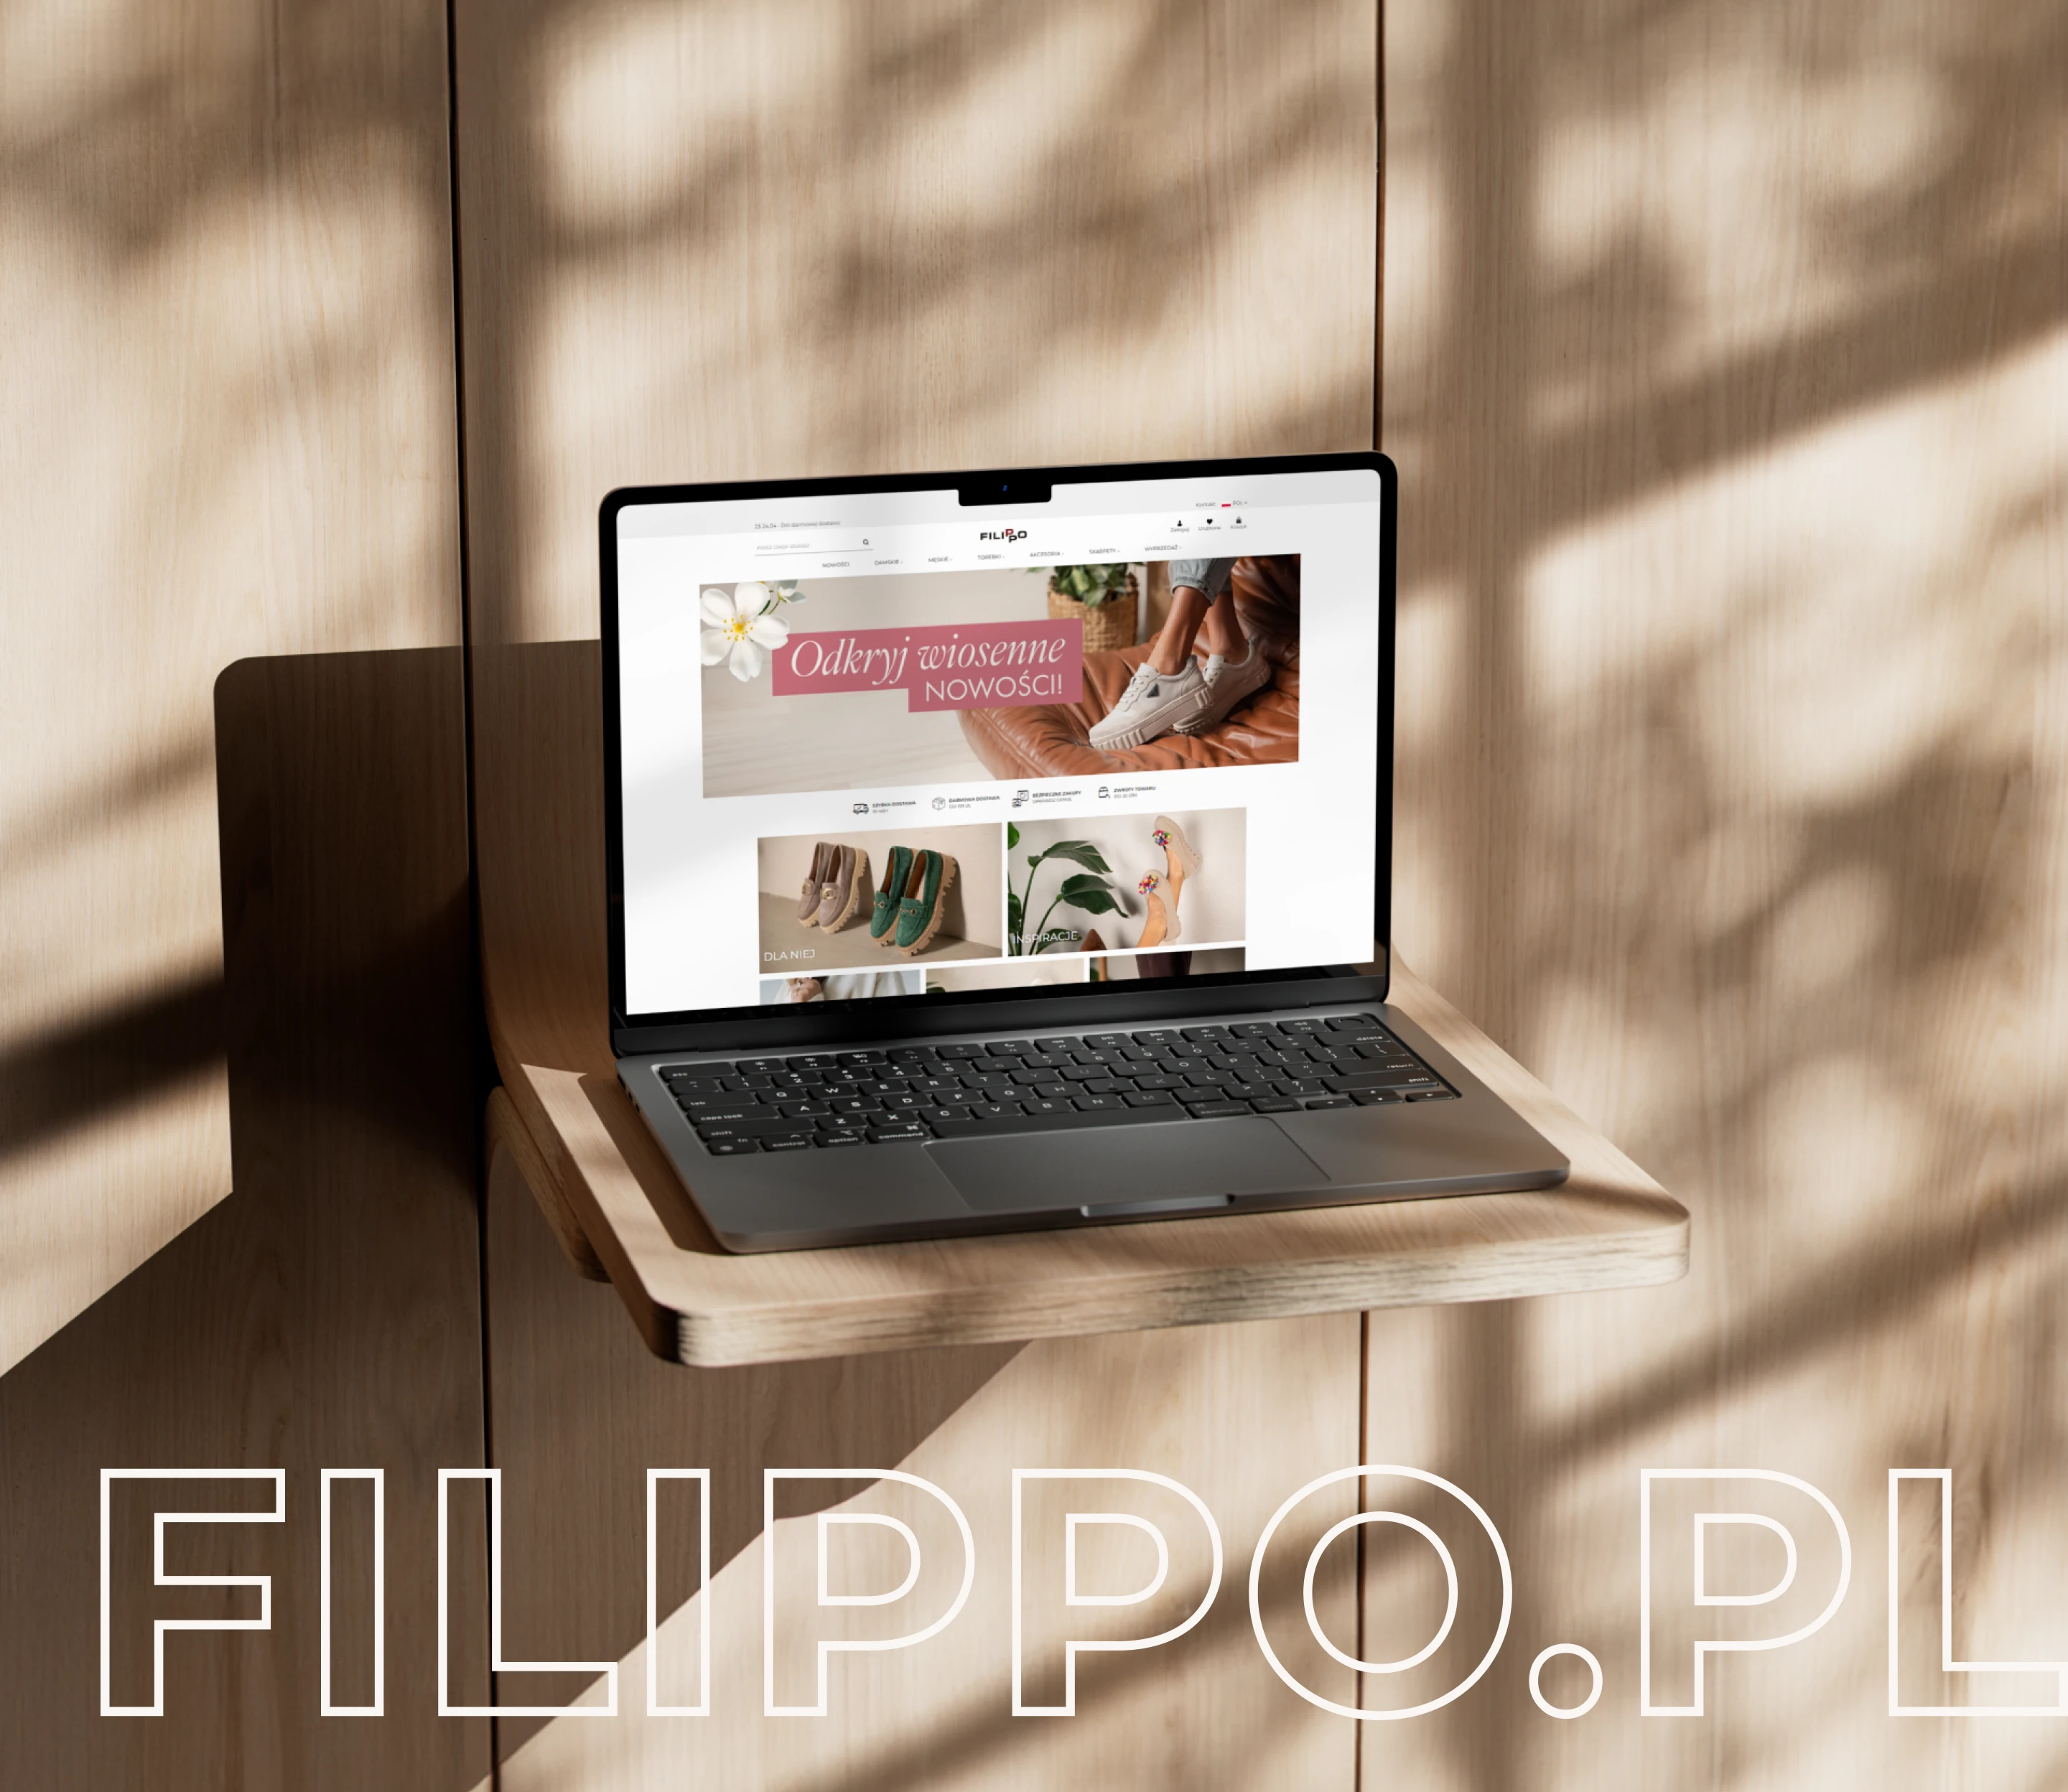 Filippo - home page